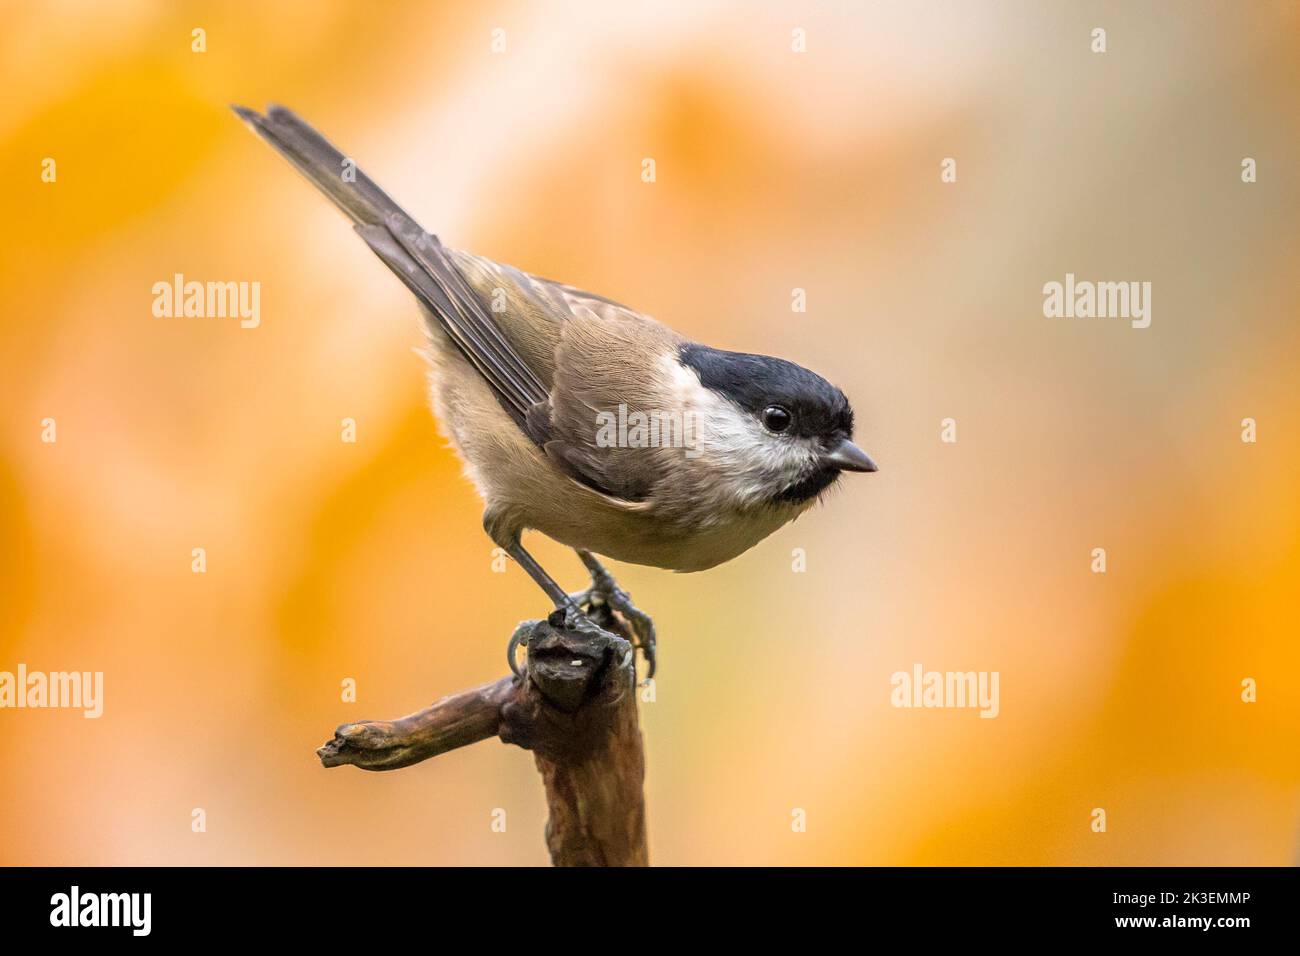 Tite de saule (Poecile montanus). Songbird perché sur une branche sur un arrière-plan d'automne flou et coloré. La faune dans la nature. Oiseau dans le jardin. Pays-Bas Banque D'Images